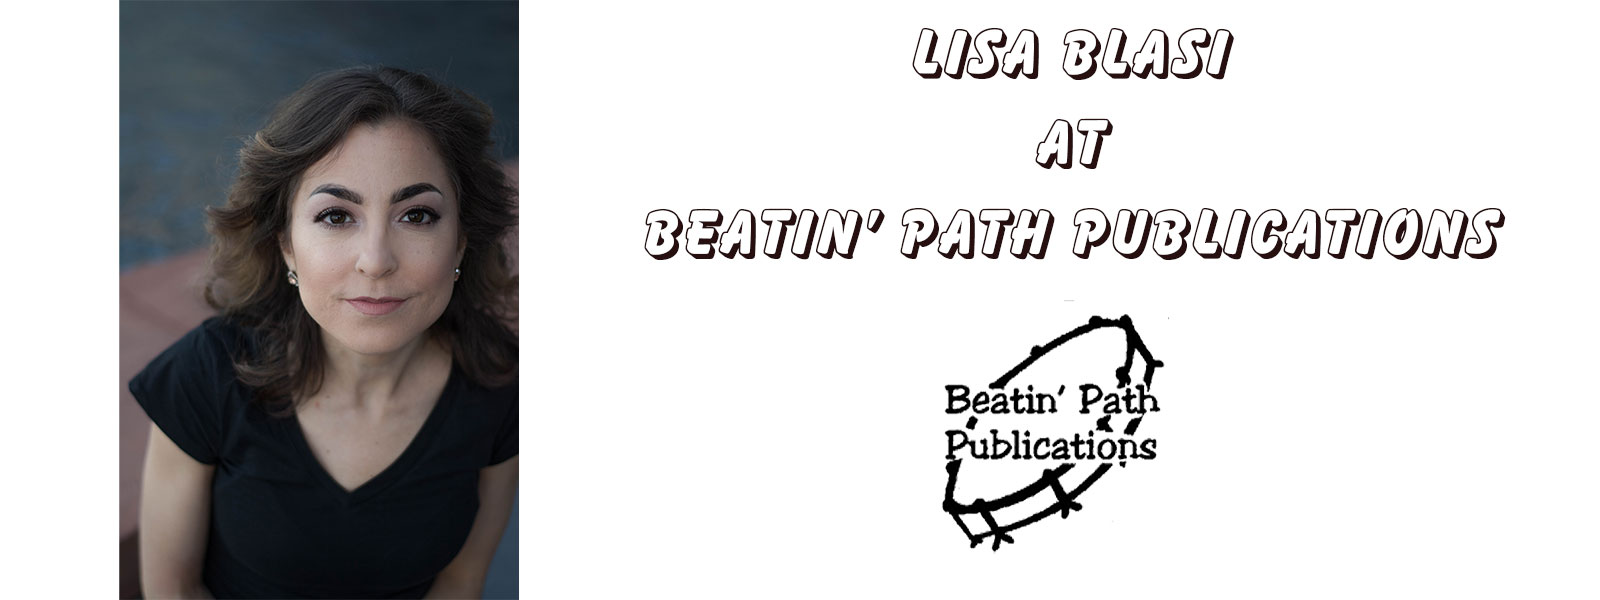 Lisa Blasi at Beatin' Path Publications